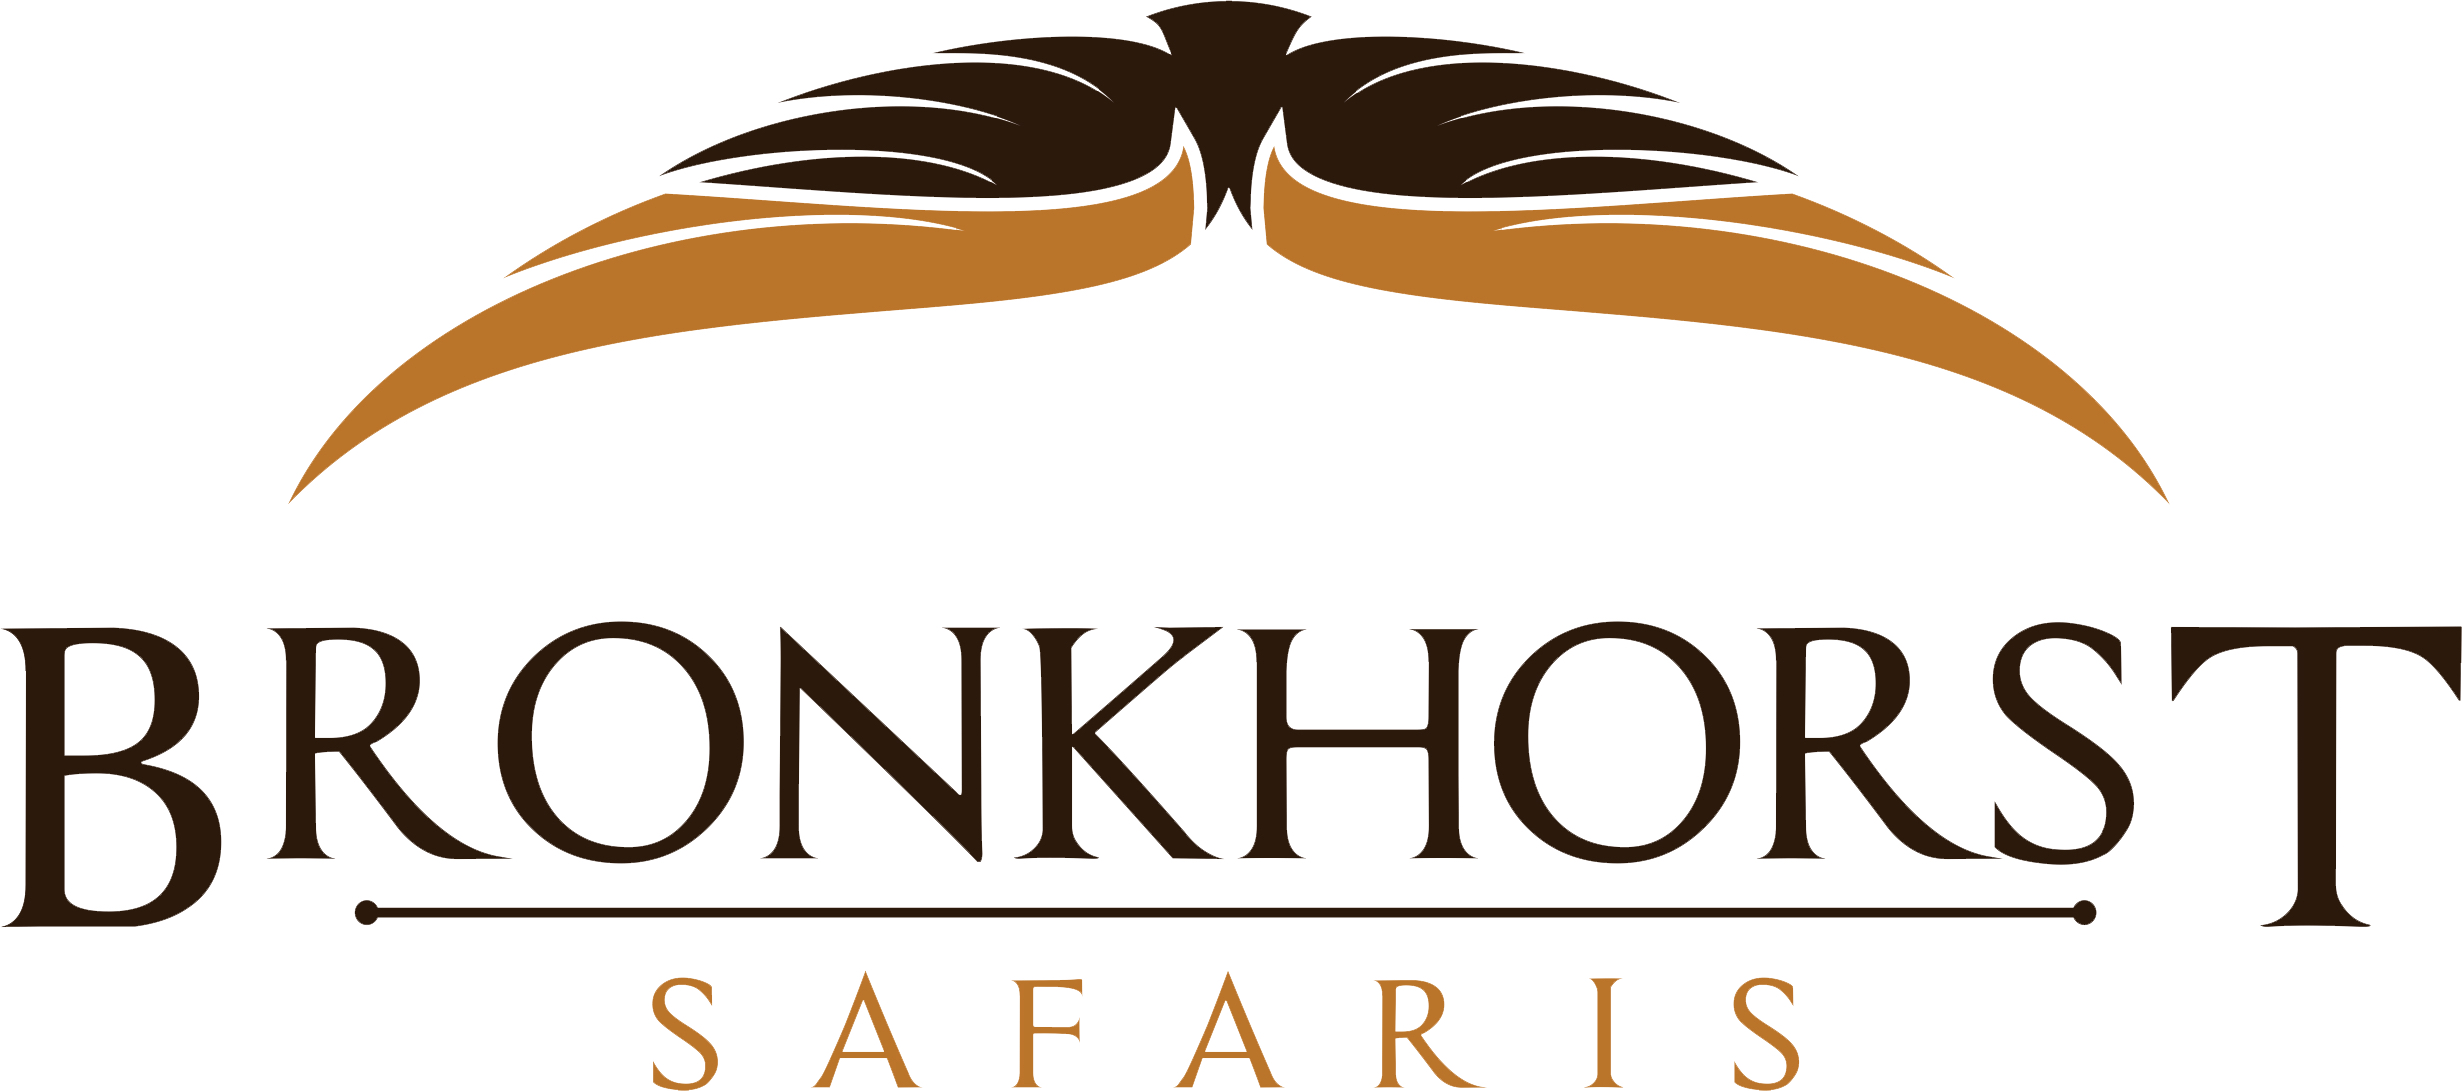 Bronkhorst New Logo.jpg